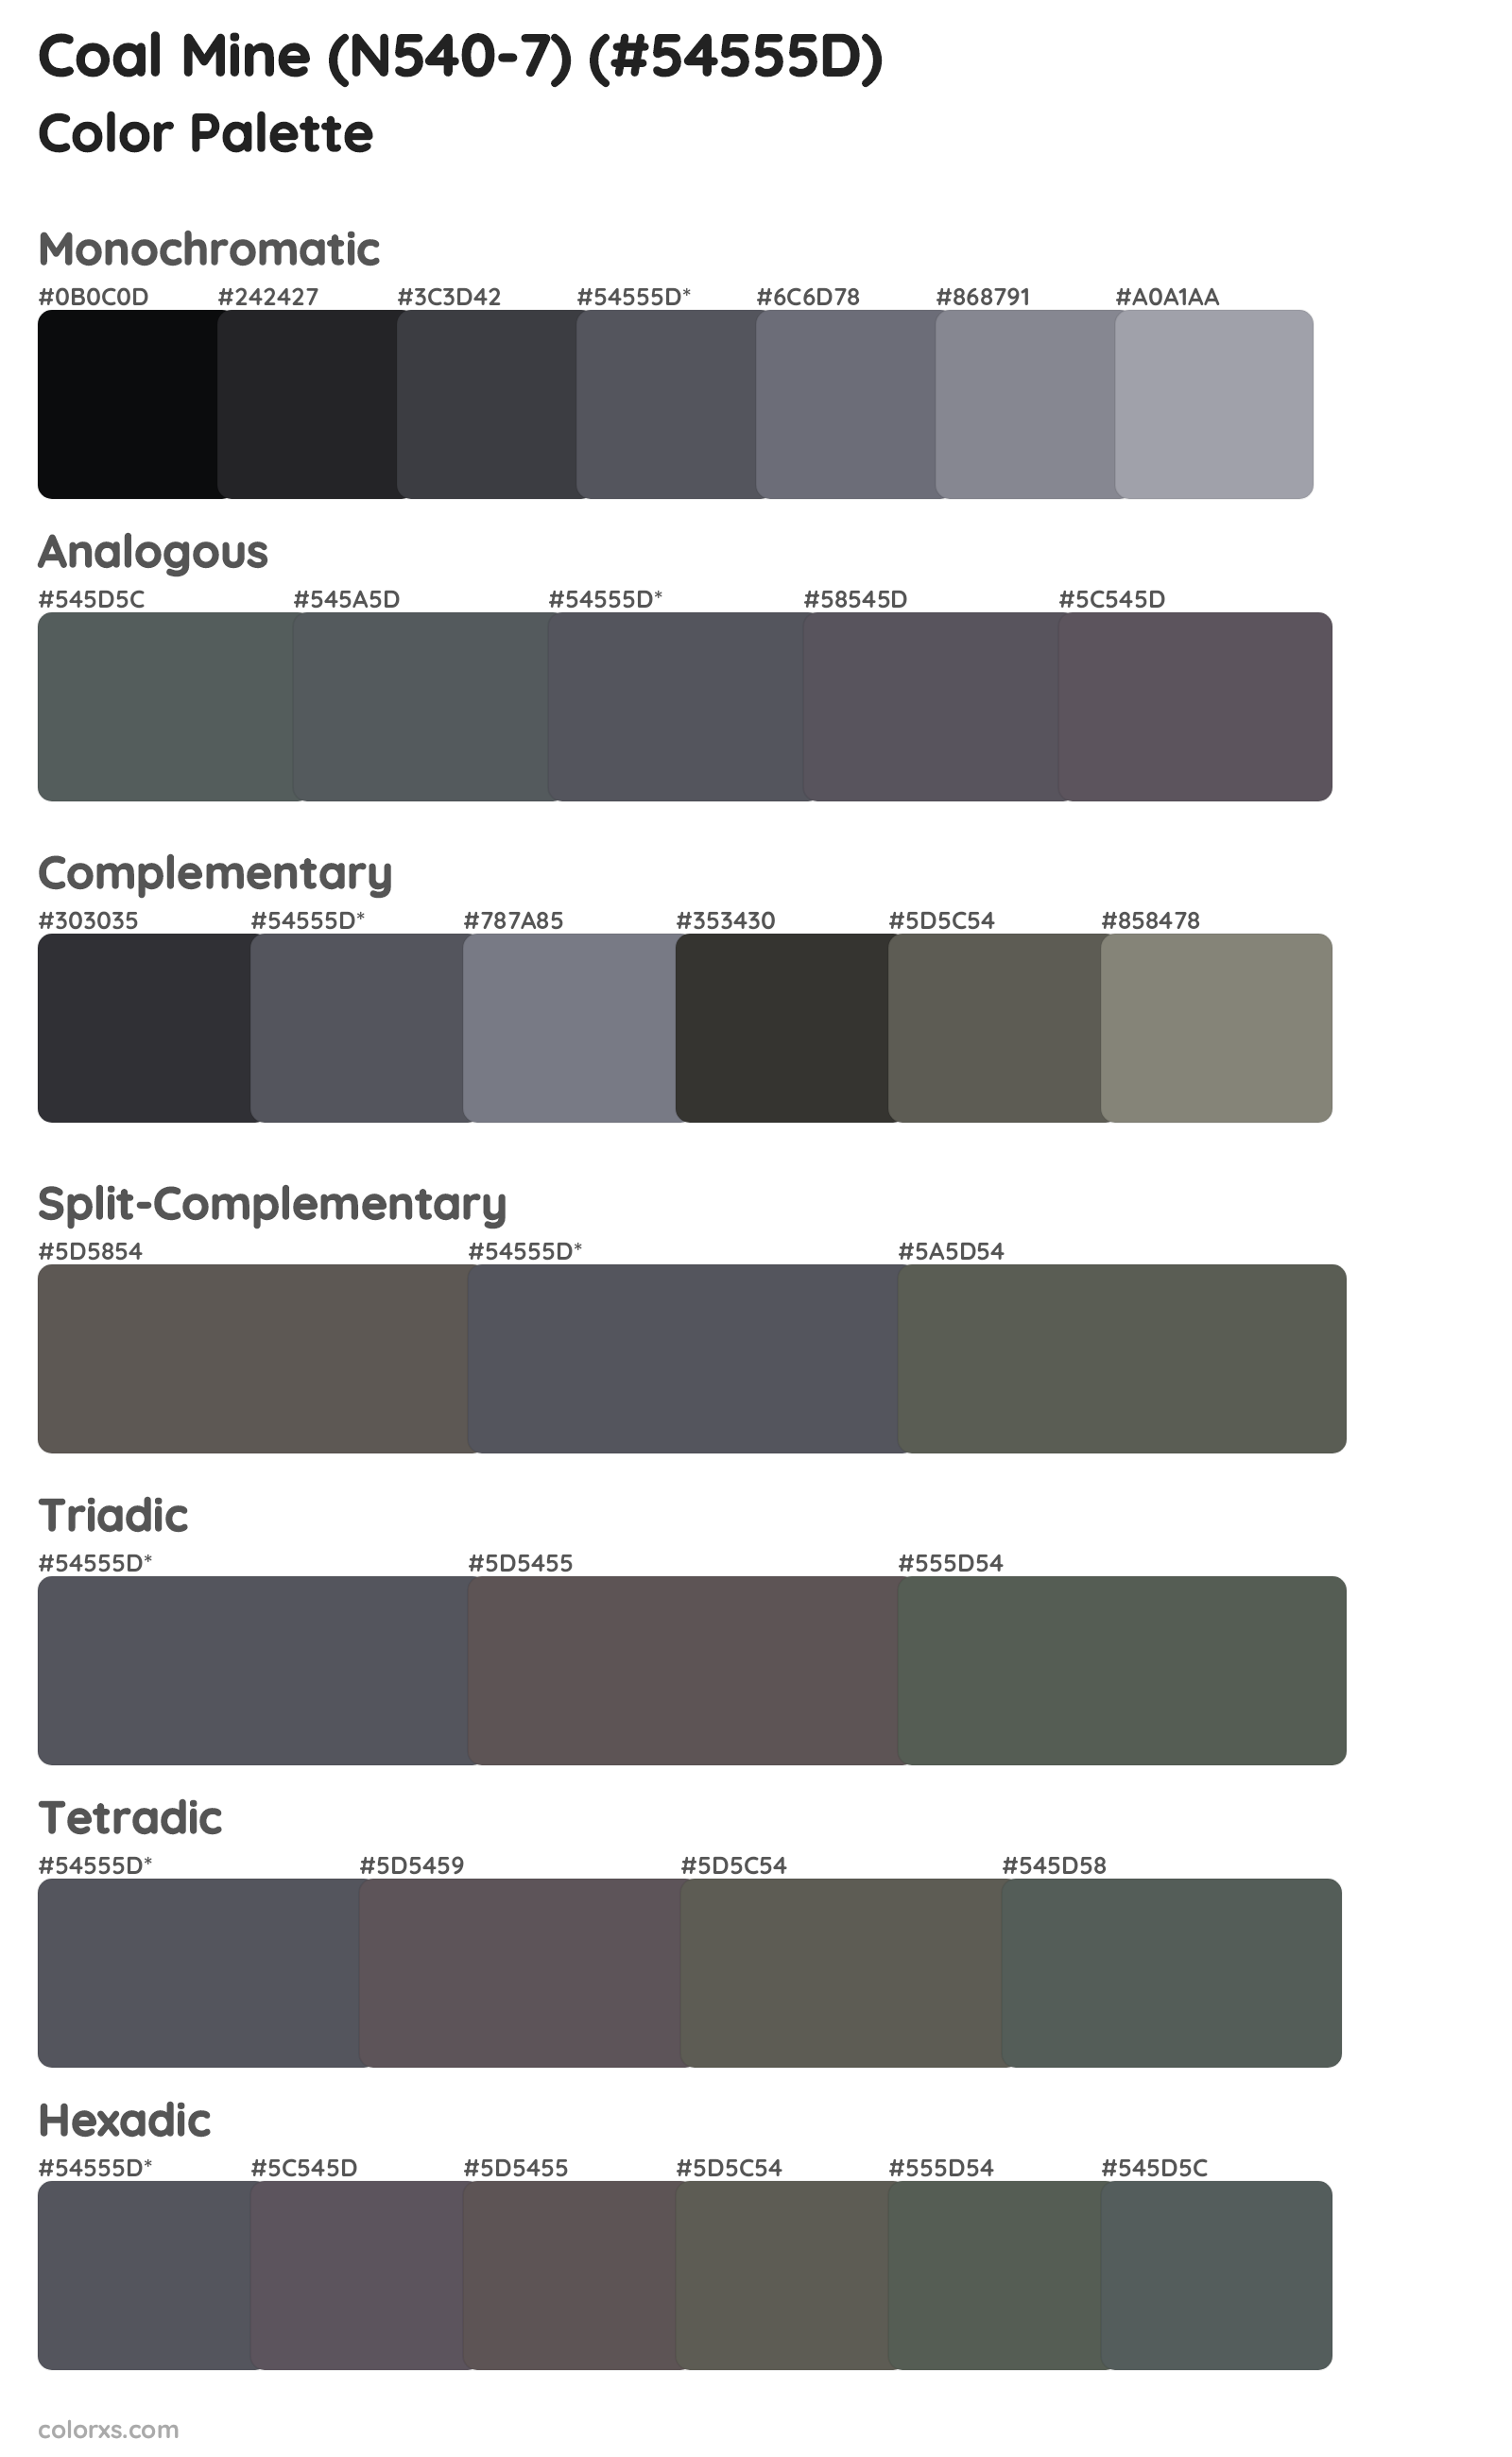 Coal Mine (N540-7) Color Scheme Palettes